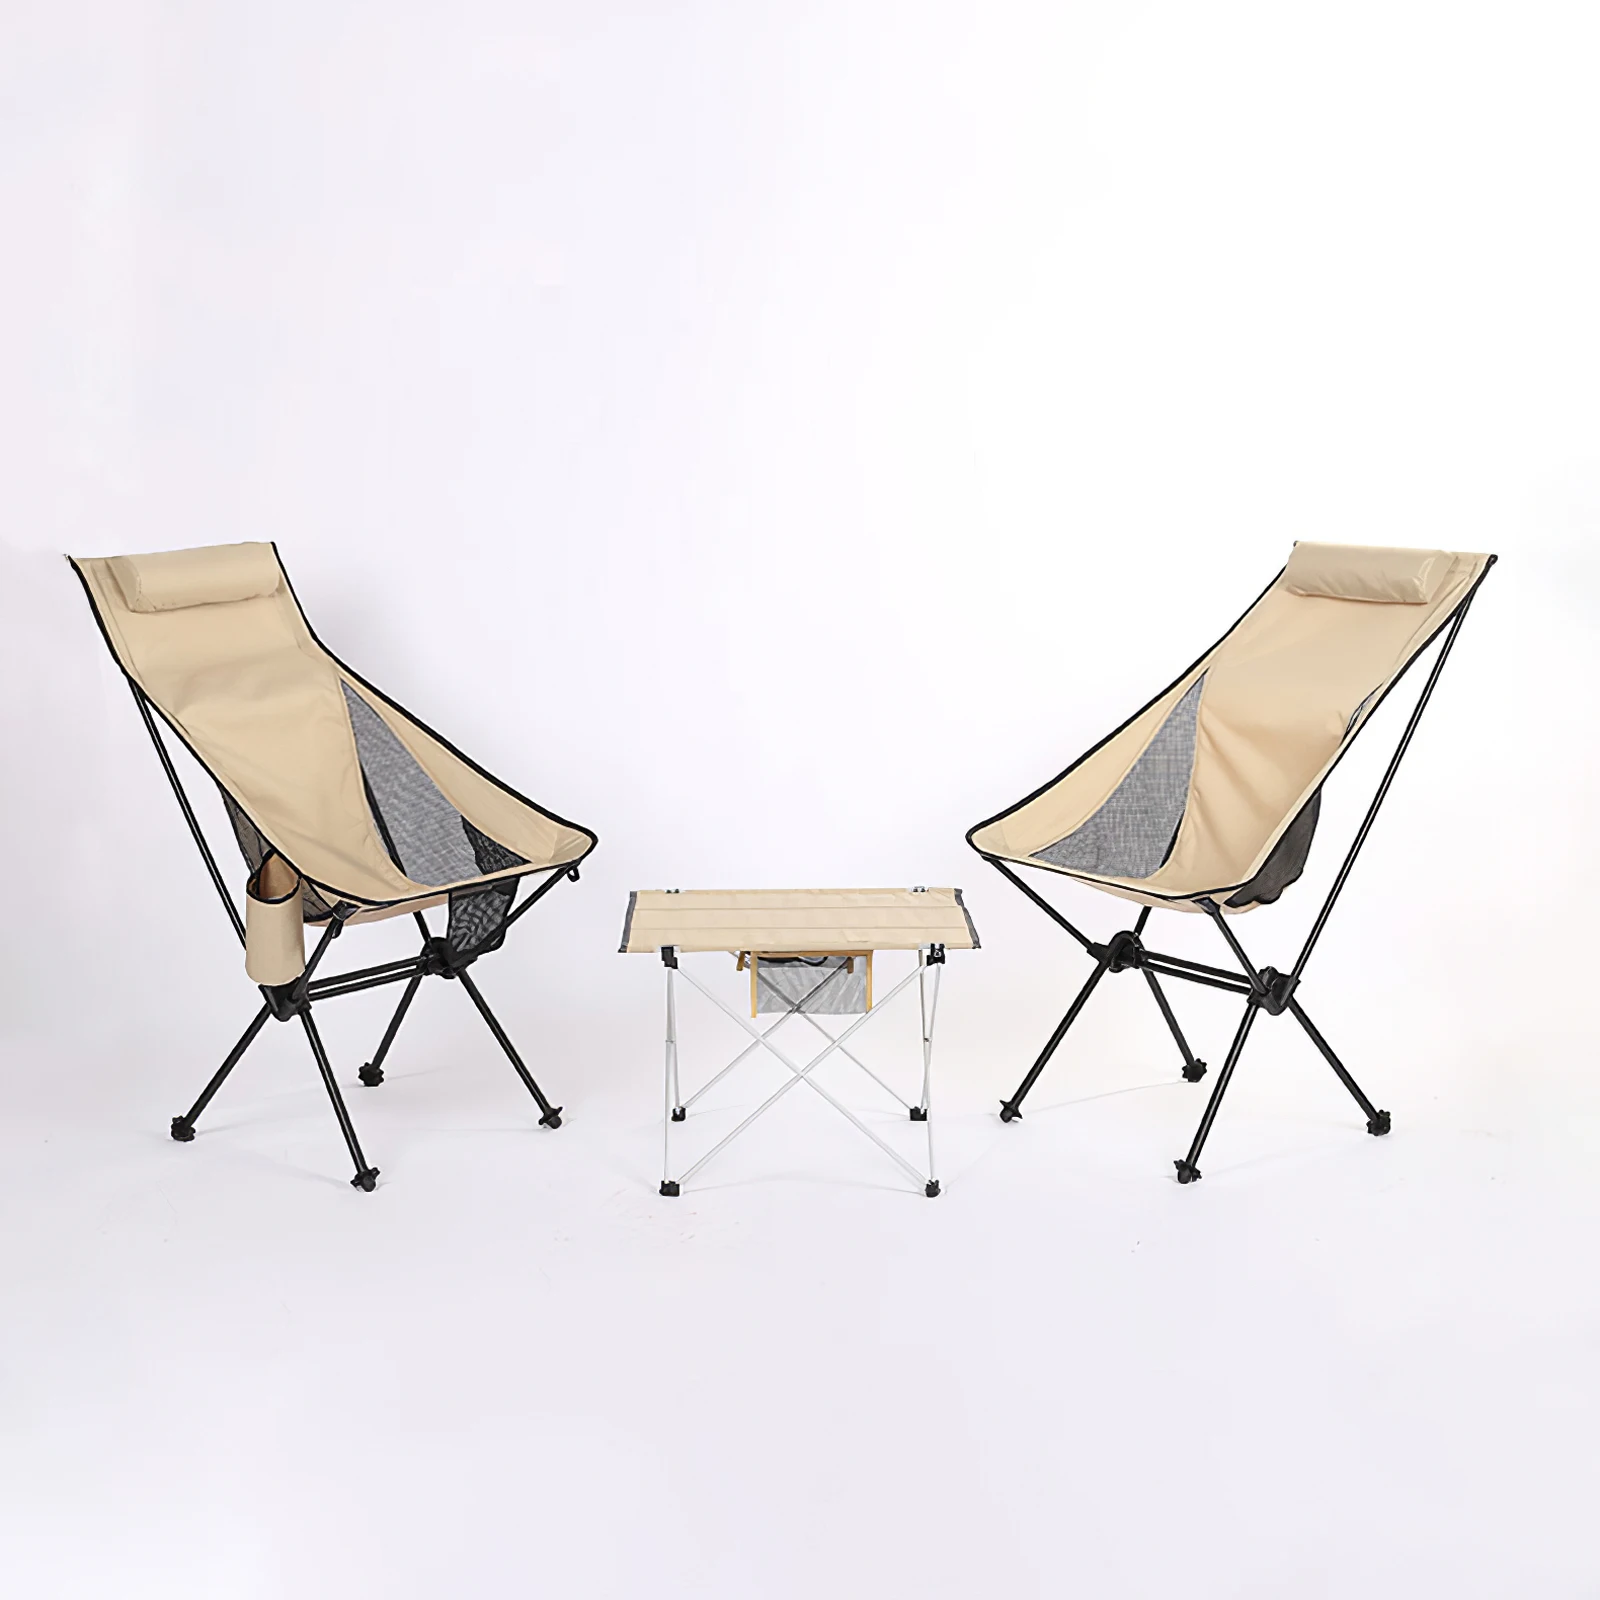 구매 초경량 야외 접이식 캠핑 의자, 피크닉 하이킹 여행 레저 배낭 달 관측 낚시 휴대용 의자